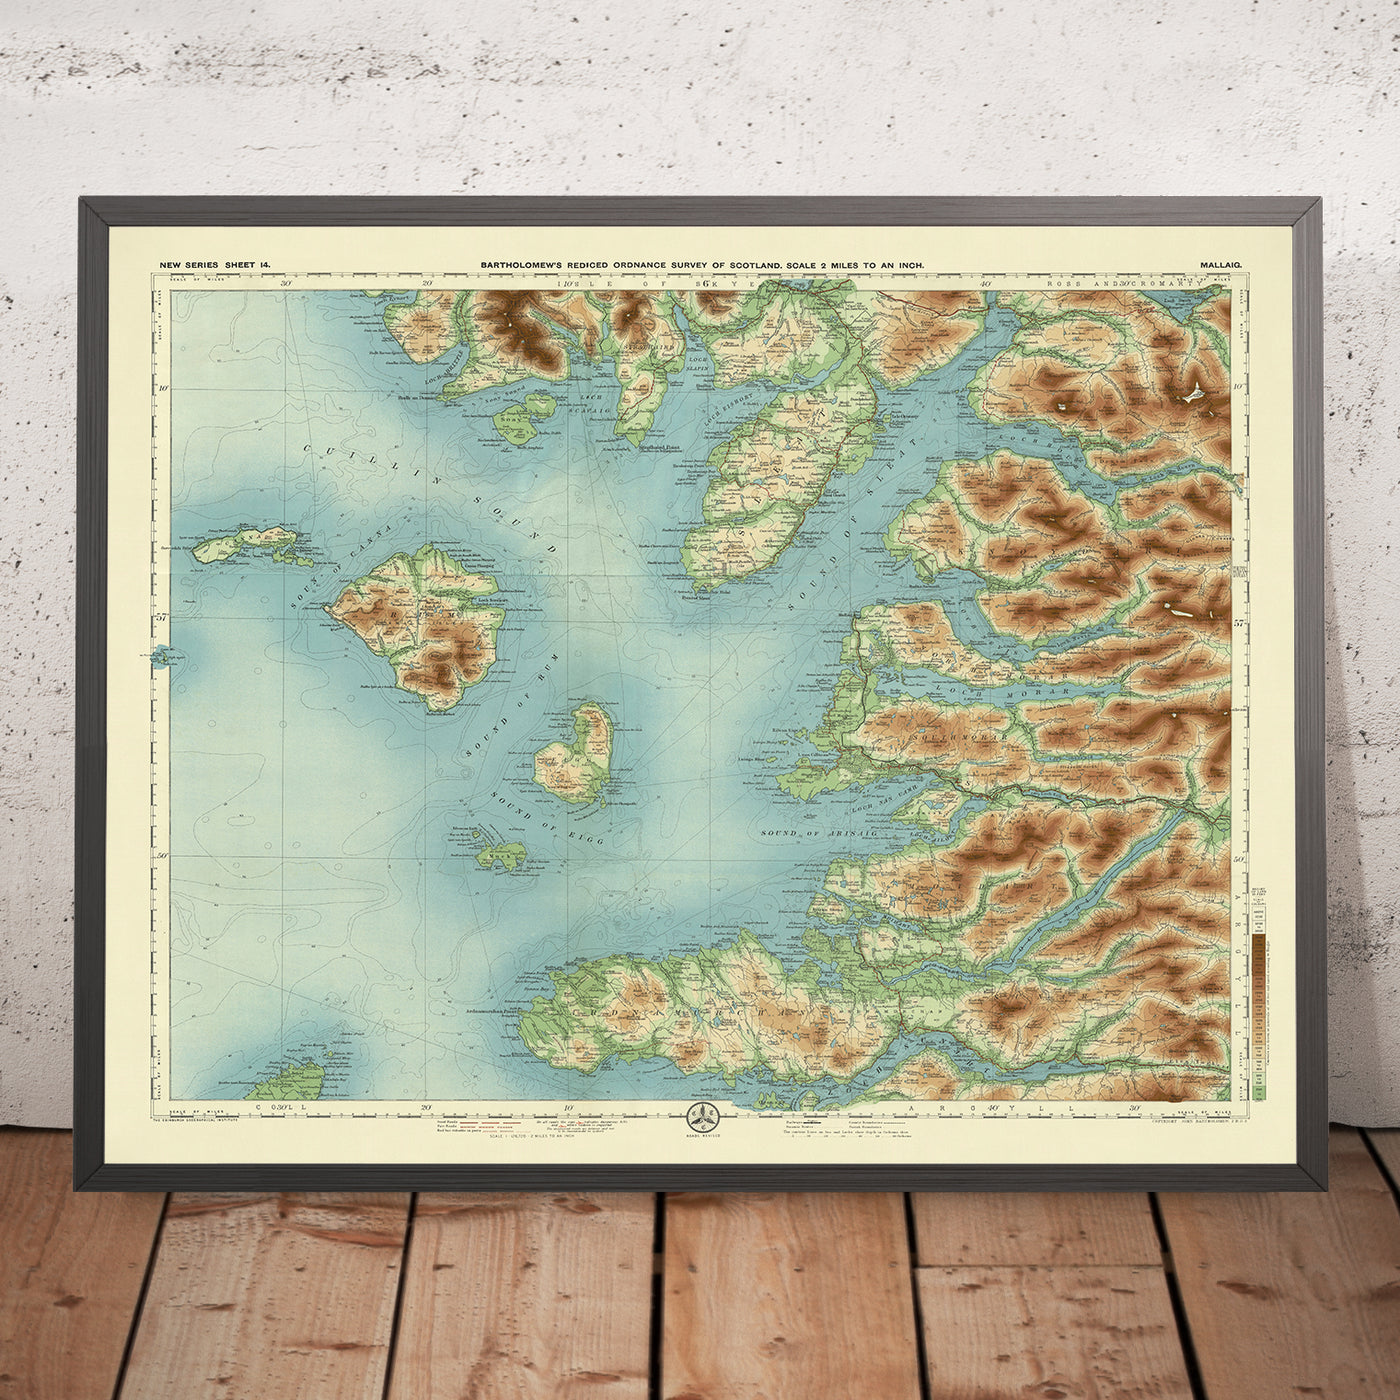 Alte OS-Karte von Mallaig, Inverness-shire von Bartholomew, 1901: Isle of Skye, Loch Morar, Cuillin Hills, Glenfinnan, Sound of Sleat, Knoydart